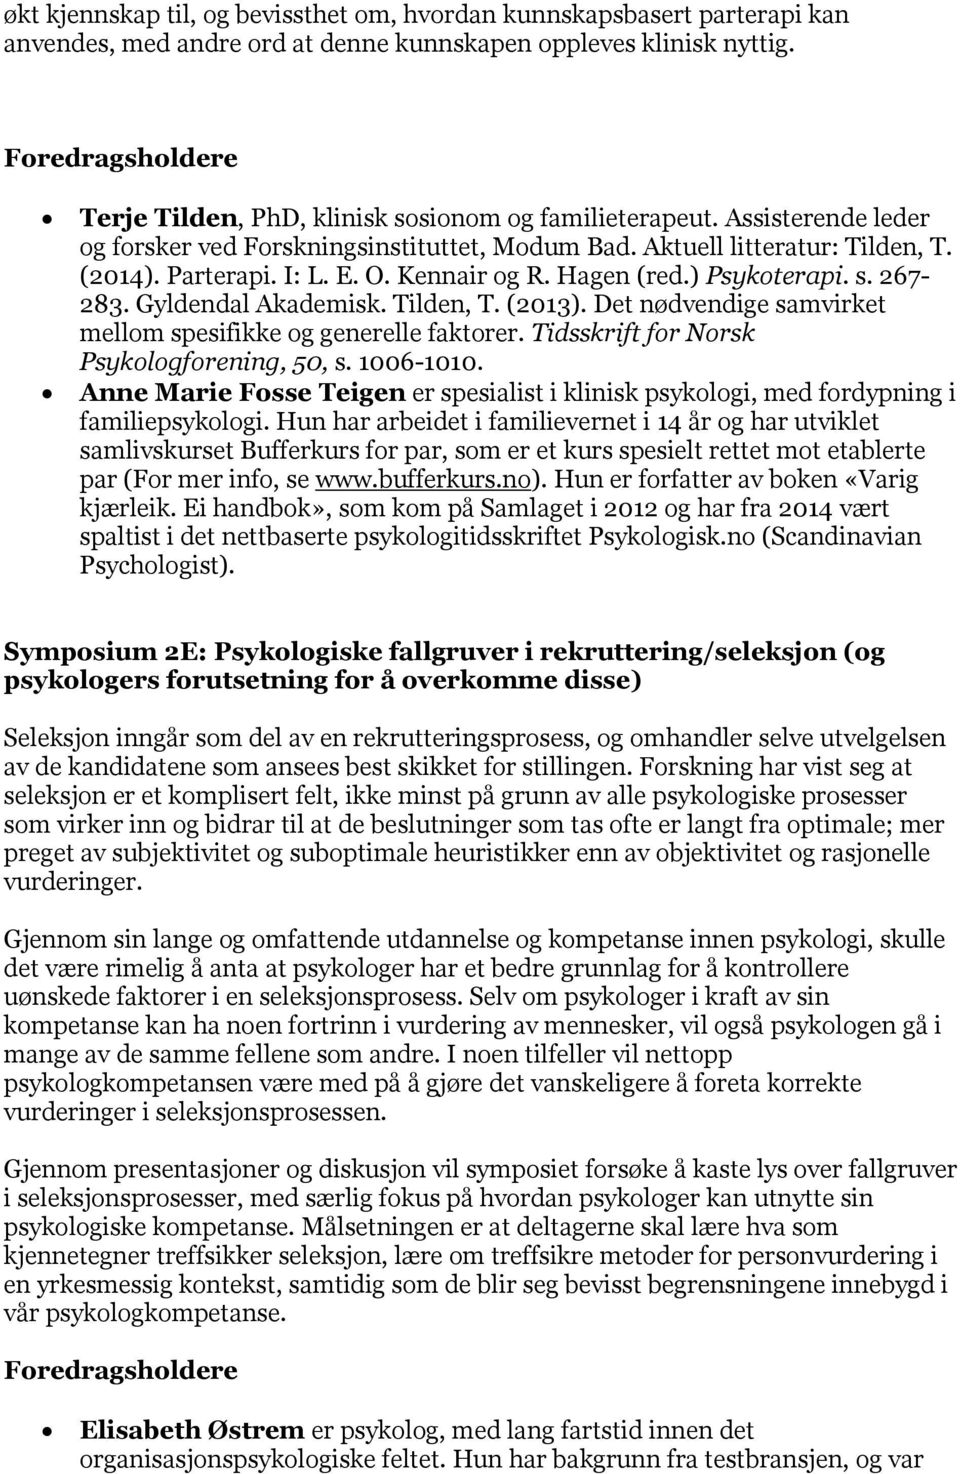 Gyldendal Akademisk. Tilden, T. (2013). Det nødvendige samvirket mellom spesifikke og generelle faktorer. Tidsskrift for Norsk Psykologforening, 50, s. 1006-1010.